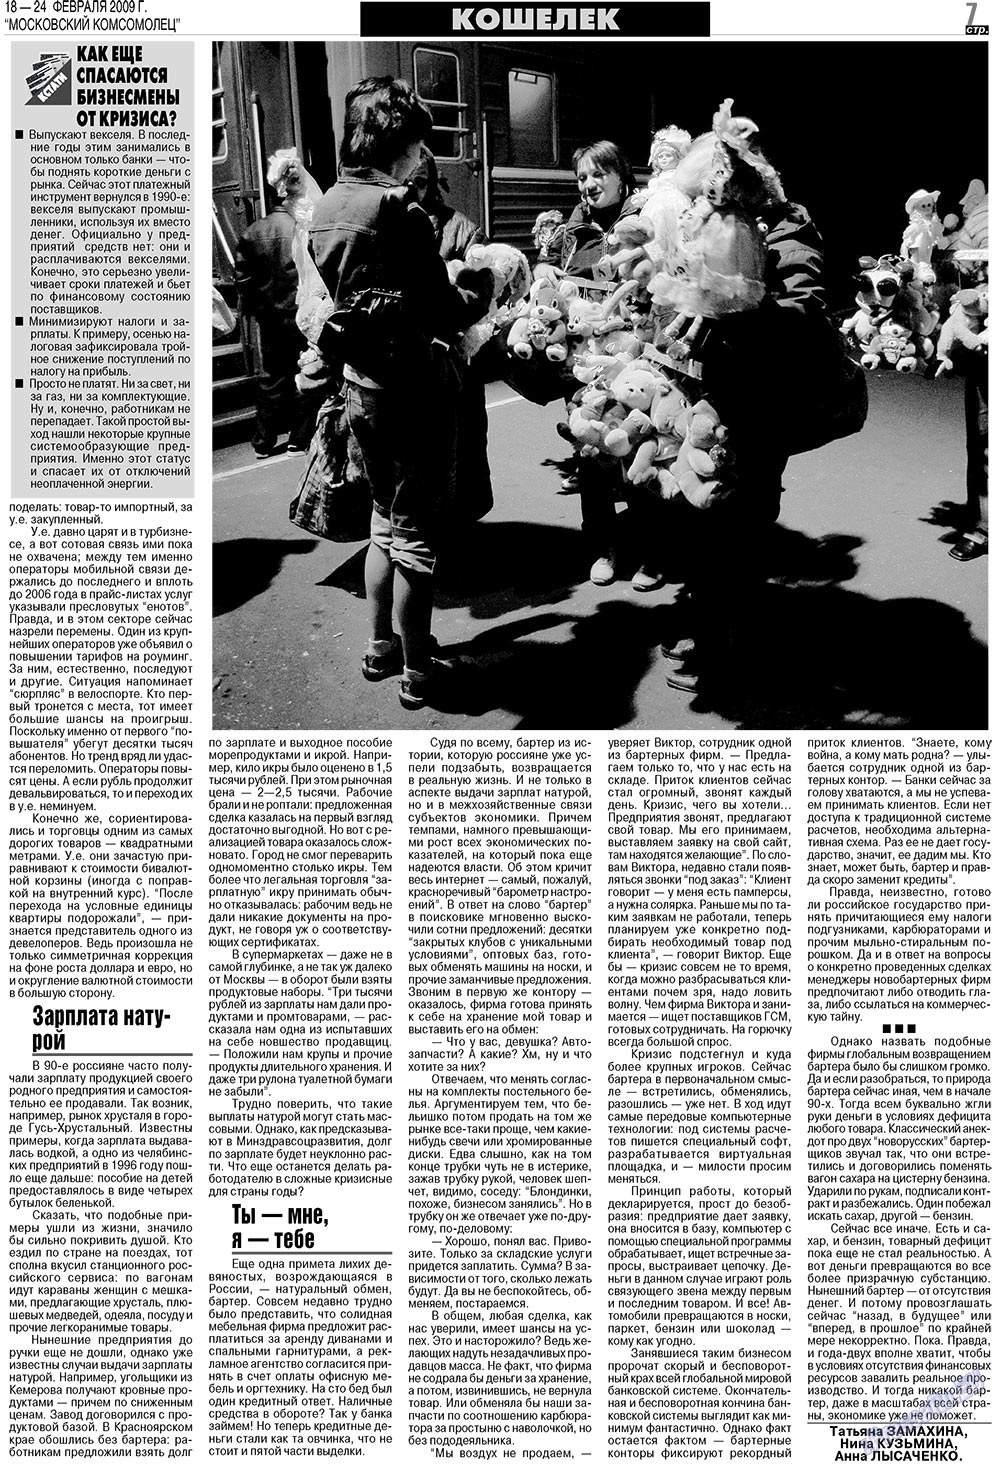 МК Испания, газета. 2009 №8 стр.7